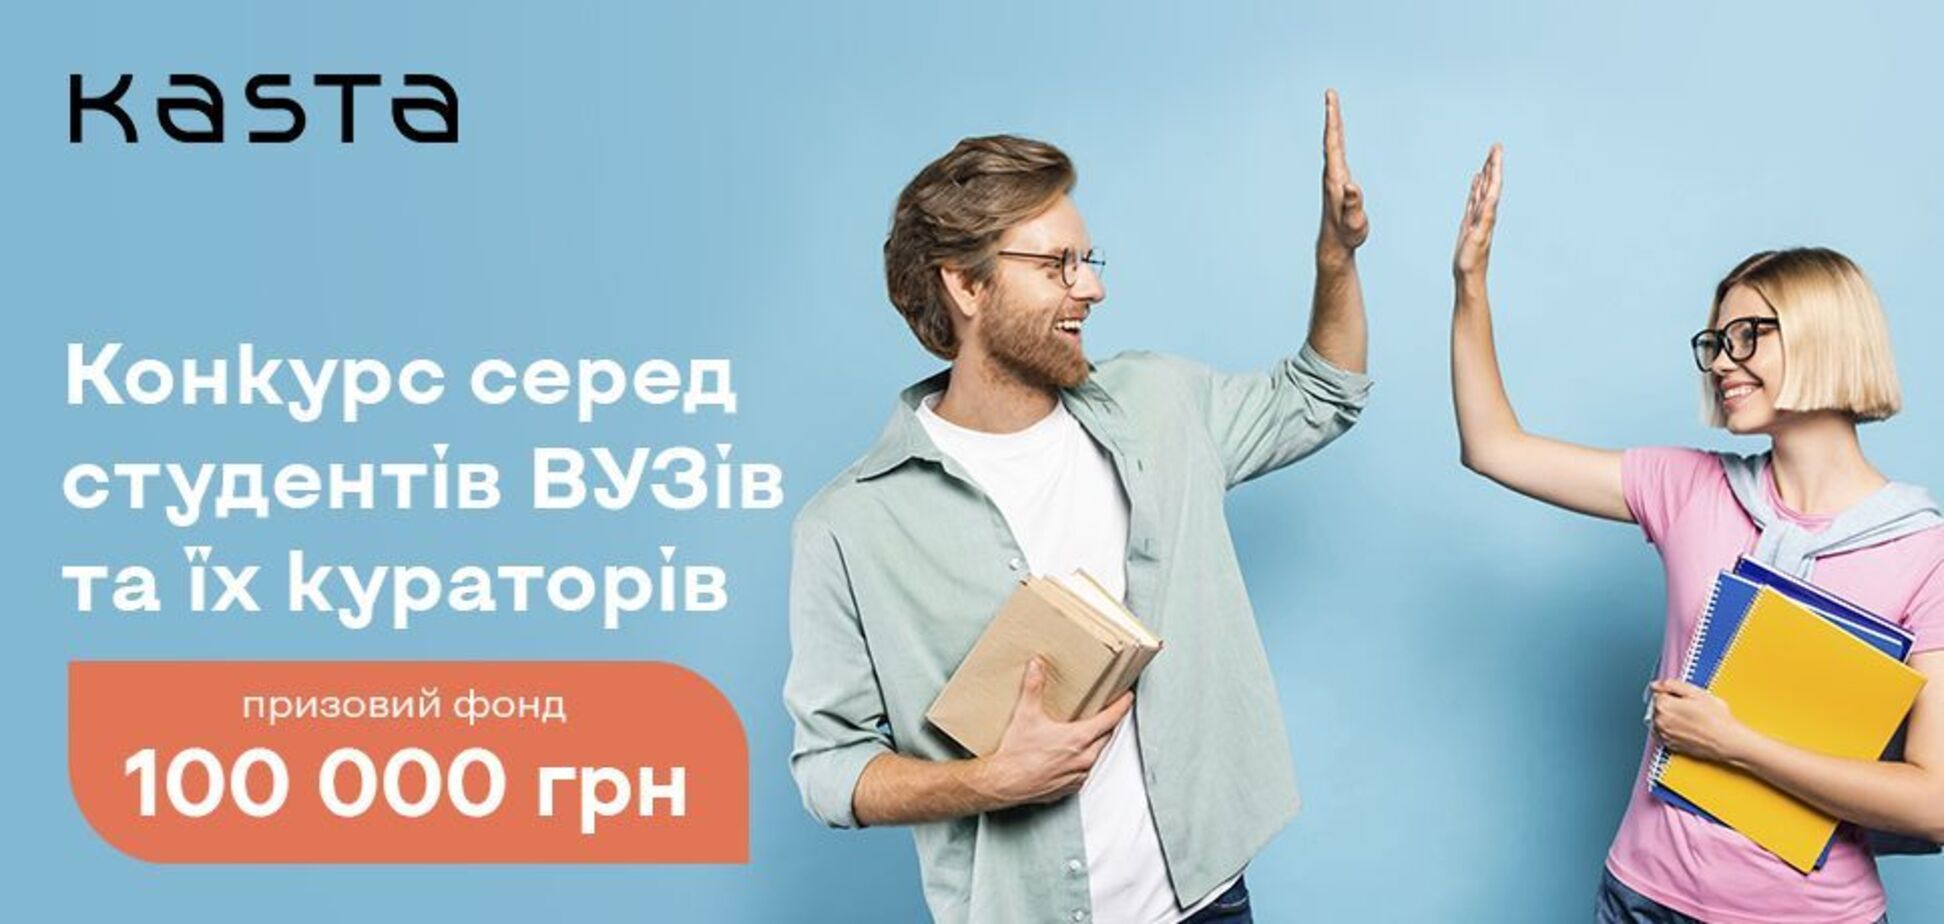 Маркетплейс Kasta.ua объявил конкурс для украинских студентов